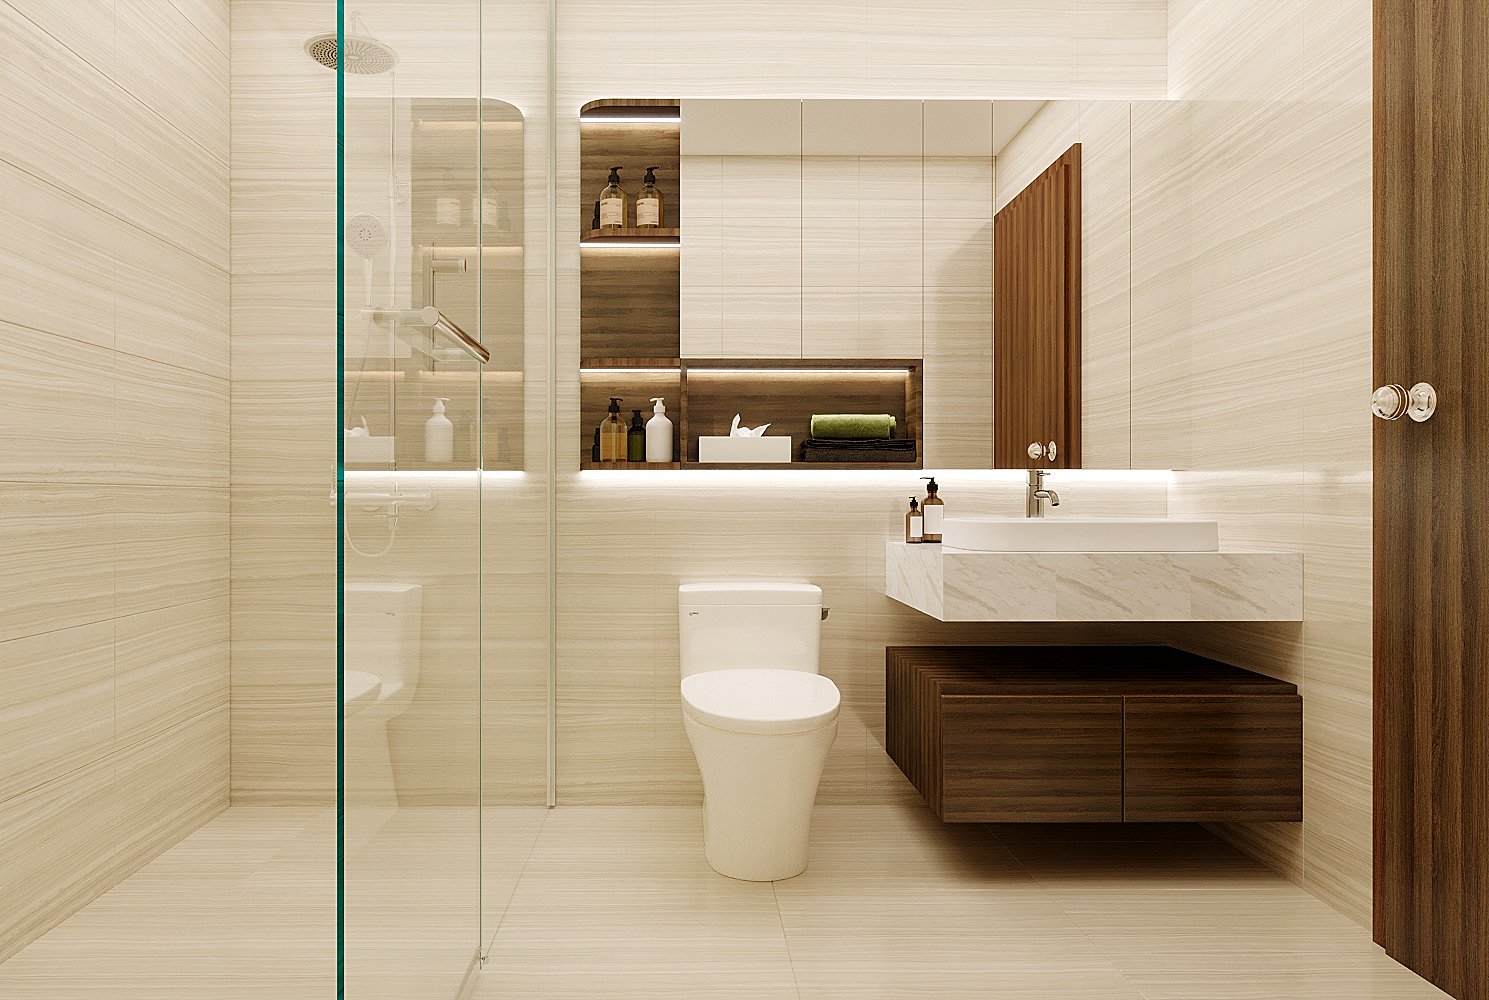 Sự kết hợp “huyền bí” của hình học với phòng tắm | Dự án căn hộ Saigon Royal - LU Design thực hiện.